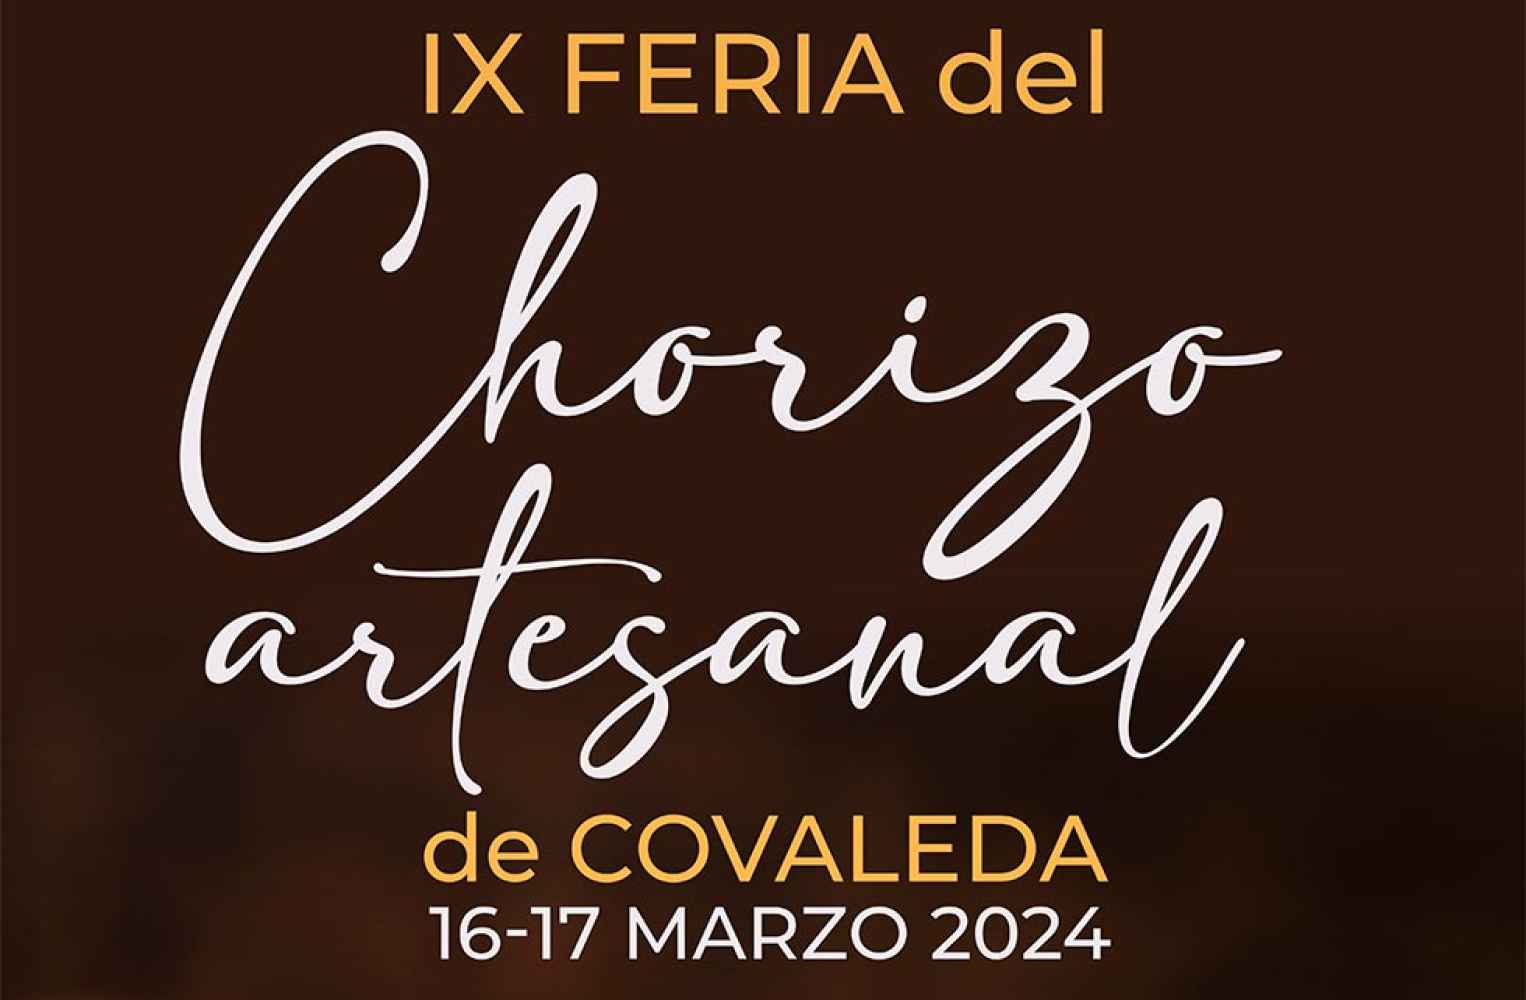 Covaleda se abre a los nuevos tiempos en la IX Feria del Chorizo artesanal 